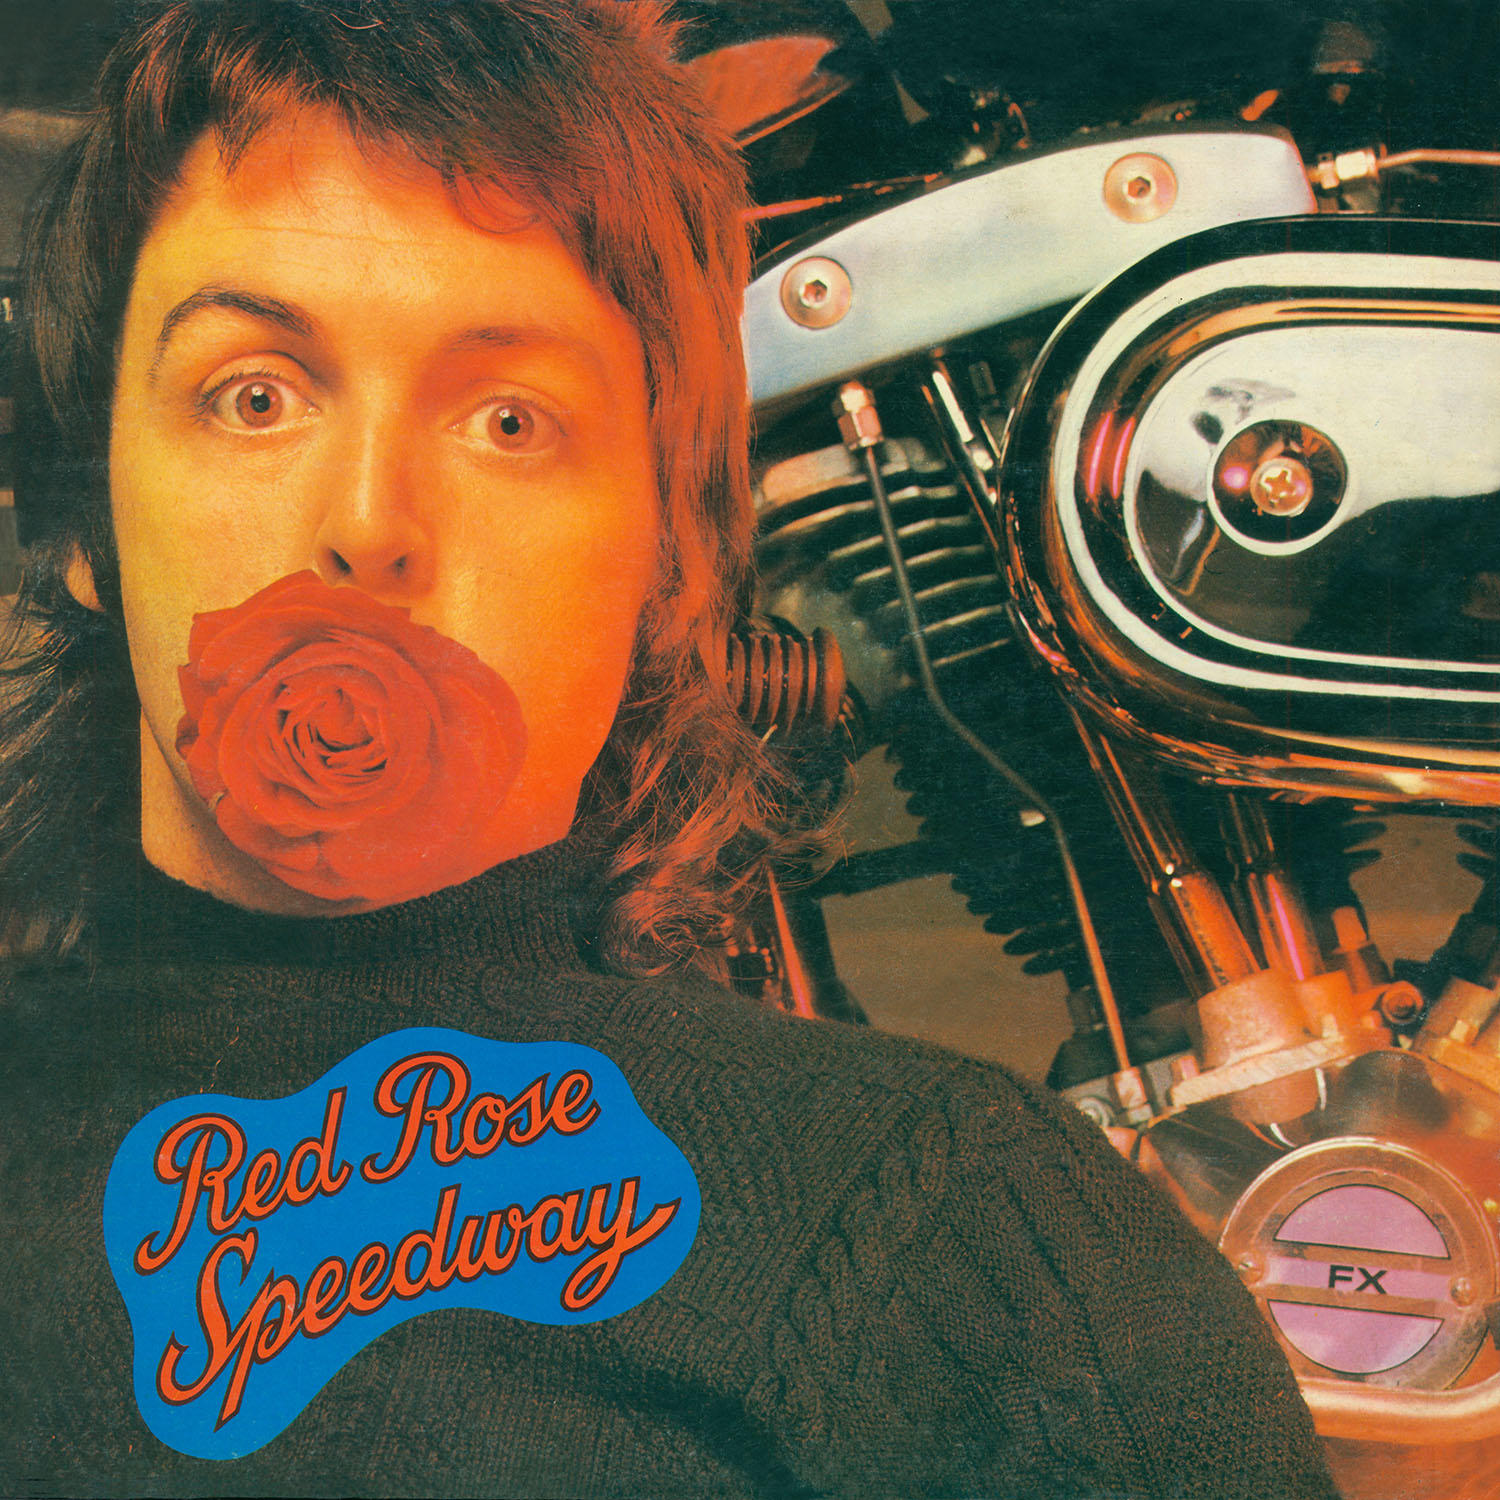 (Vinyl) Red - Speedway Paul McCartney, Rose - (2LP) Wings